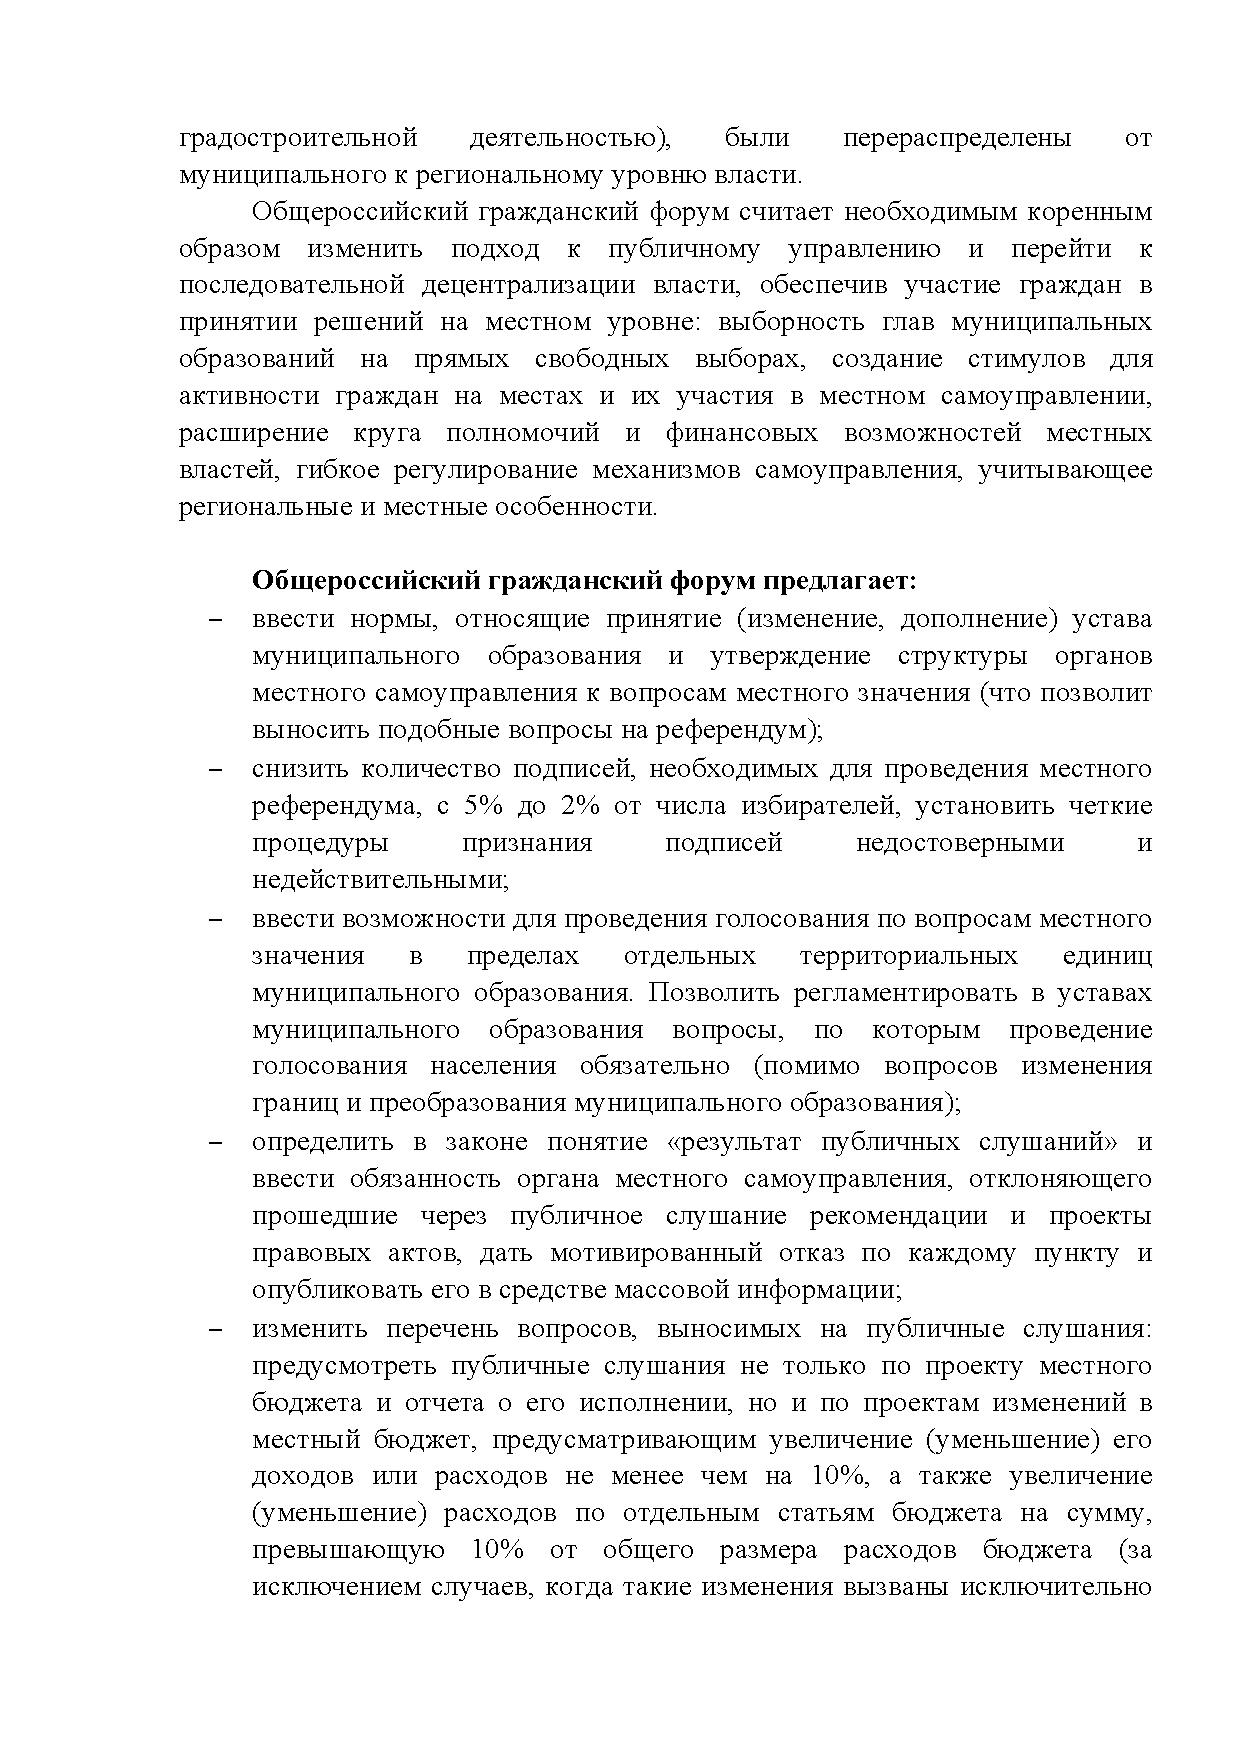  Опубликованы Предложения Общероссийского гражданского форума 2015 - фото 23